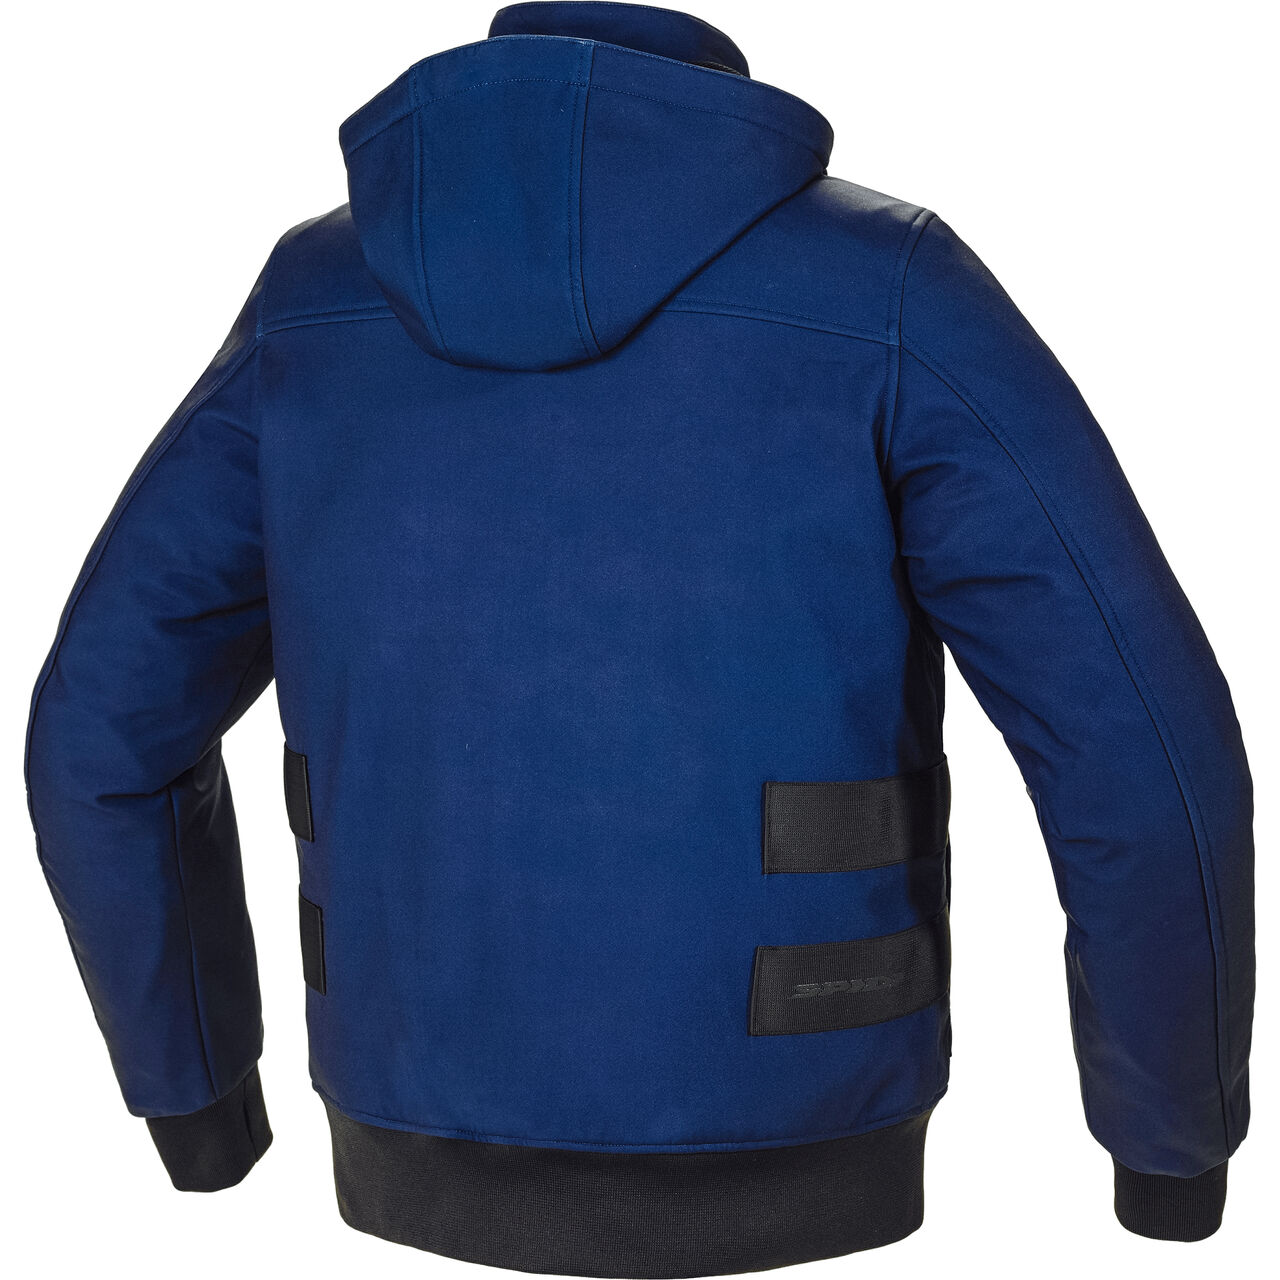 Metromover H2Out Textile Jacket black/blue 3XL